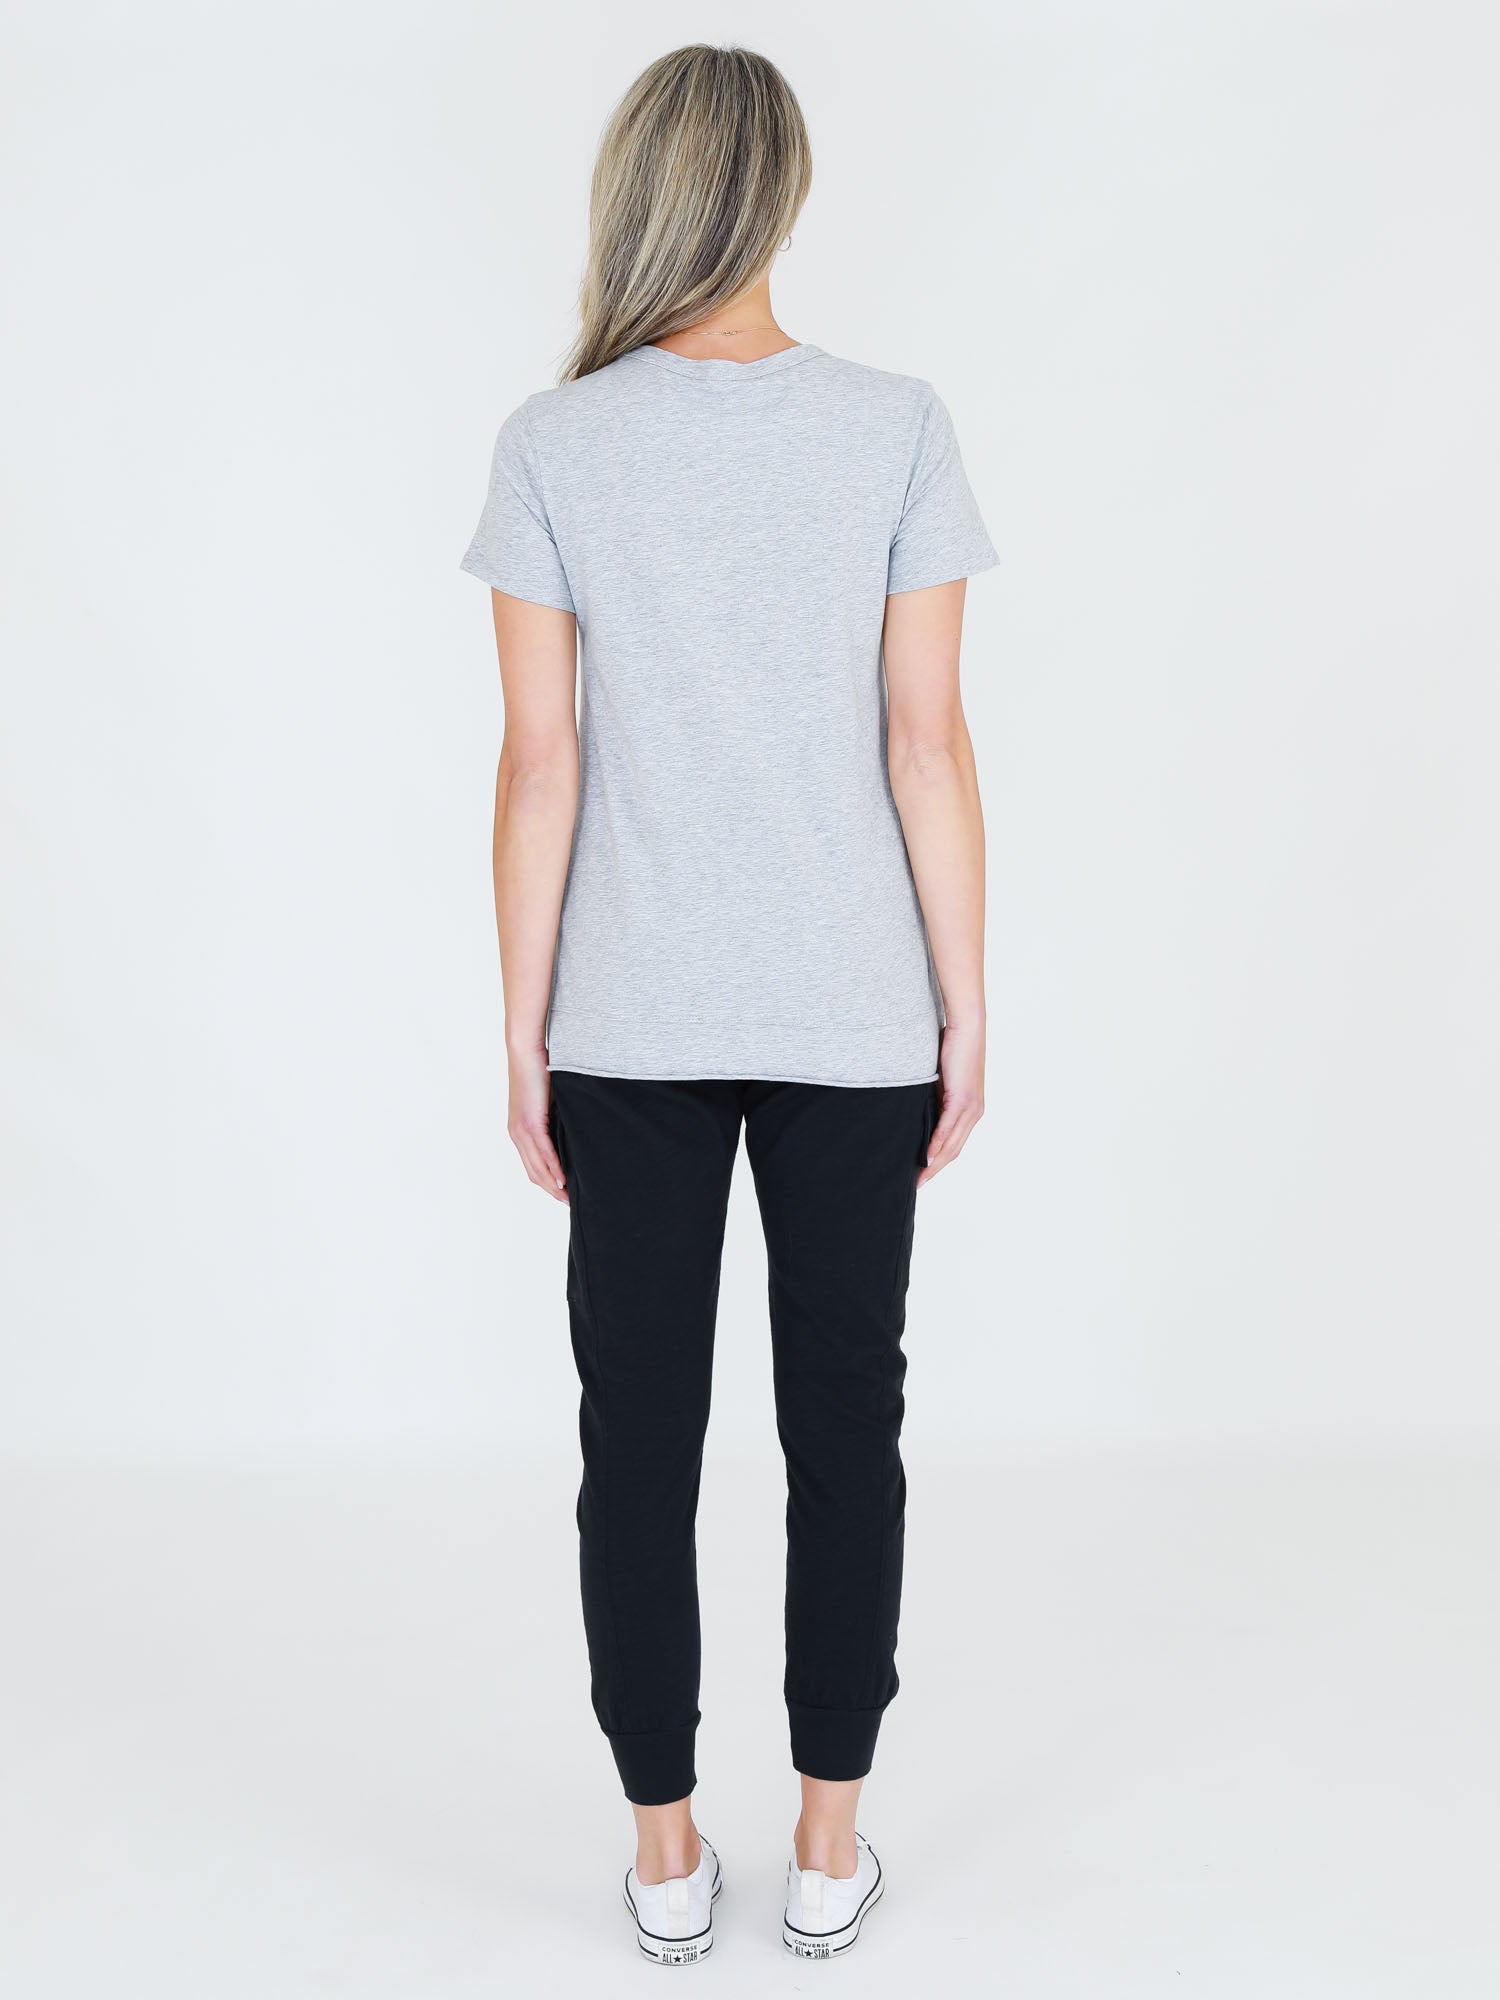 Grey T-Shirt #color_grey marle